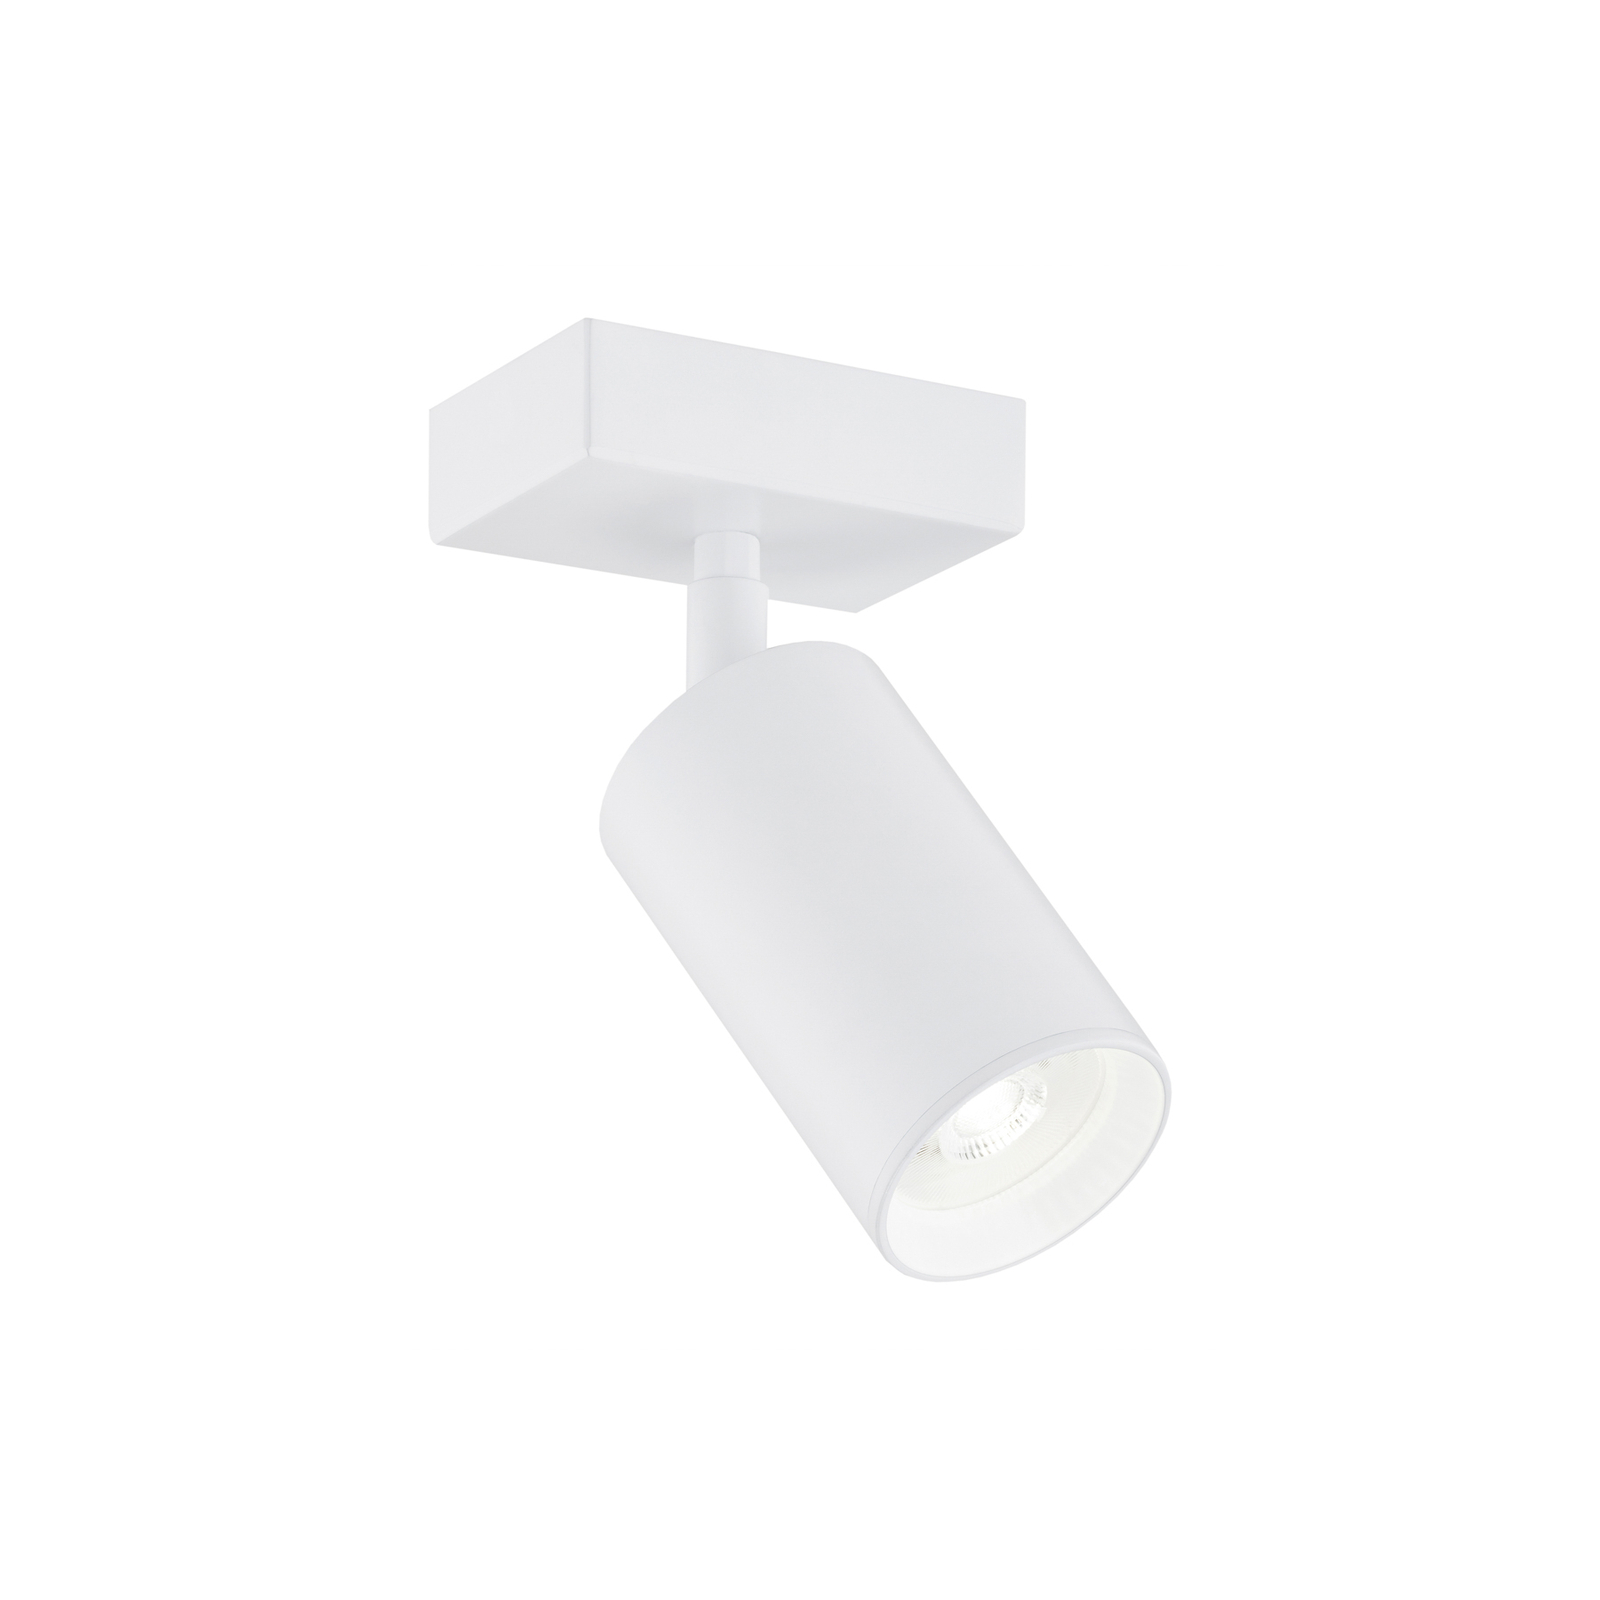 Downlight Sado white steel, adjustable 1-bulb angular